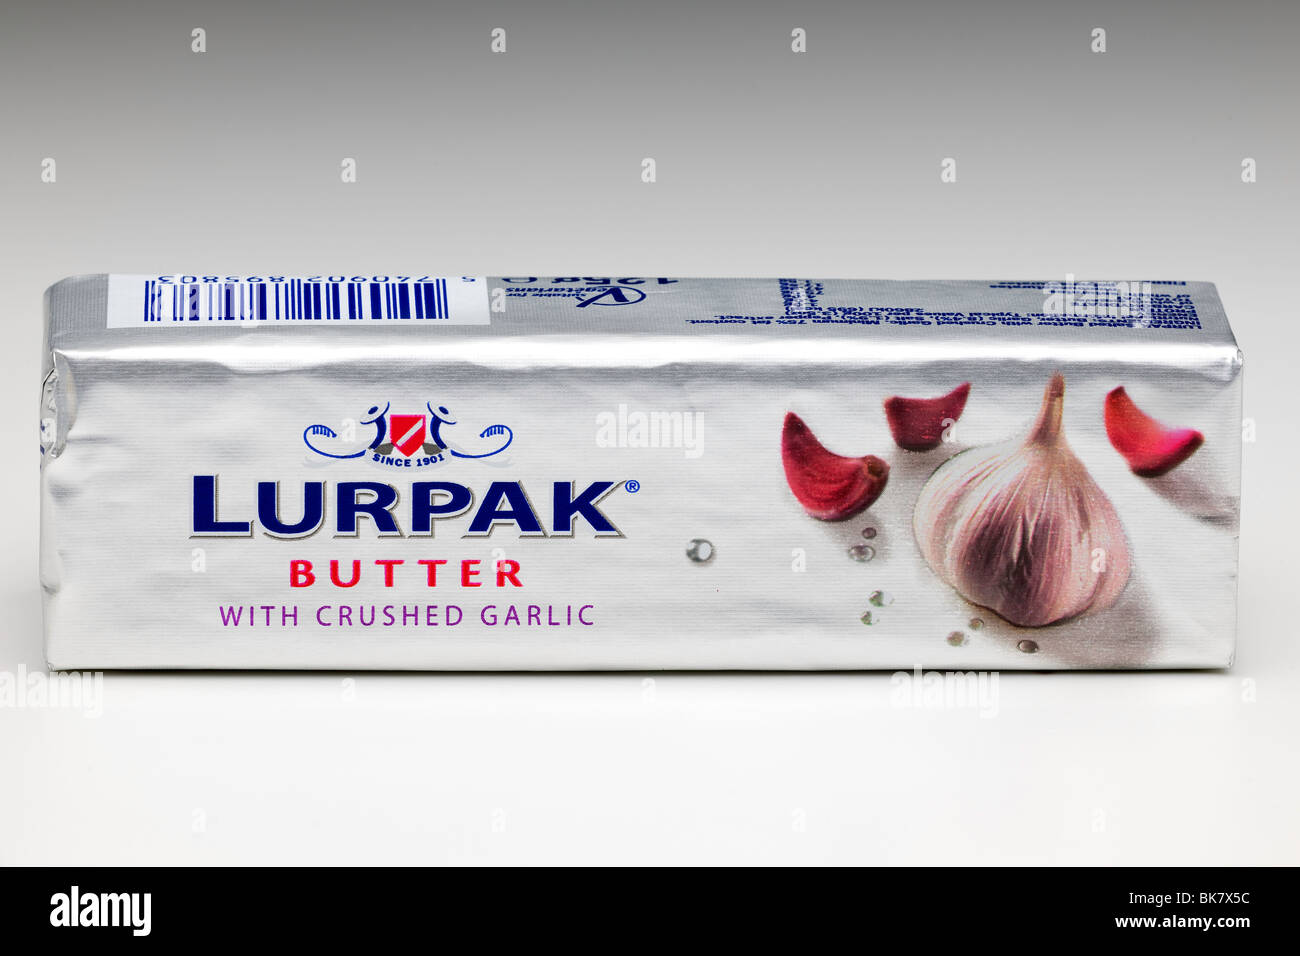 Bloc de 125g de beurre Lurpak avec de l'ail écrasé Banque D'Images